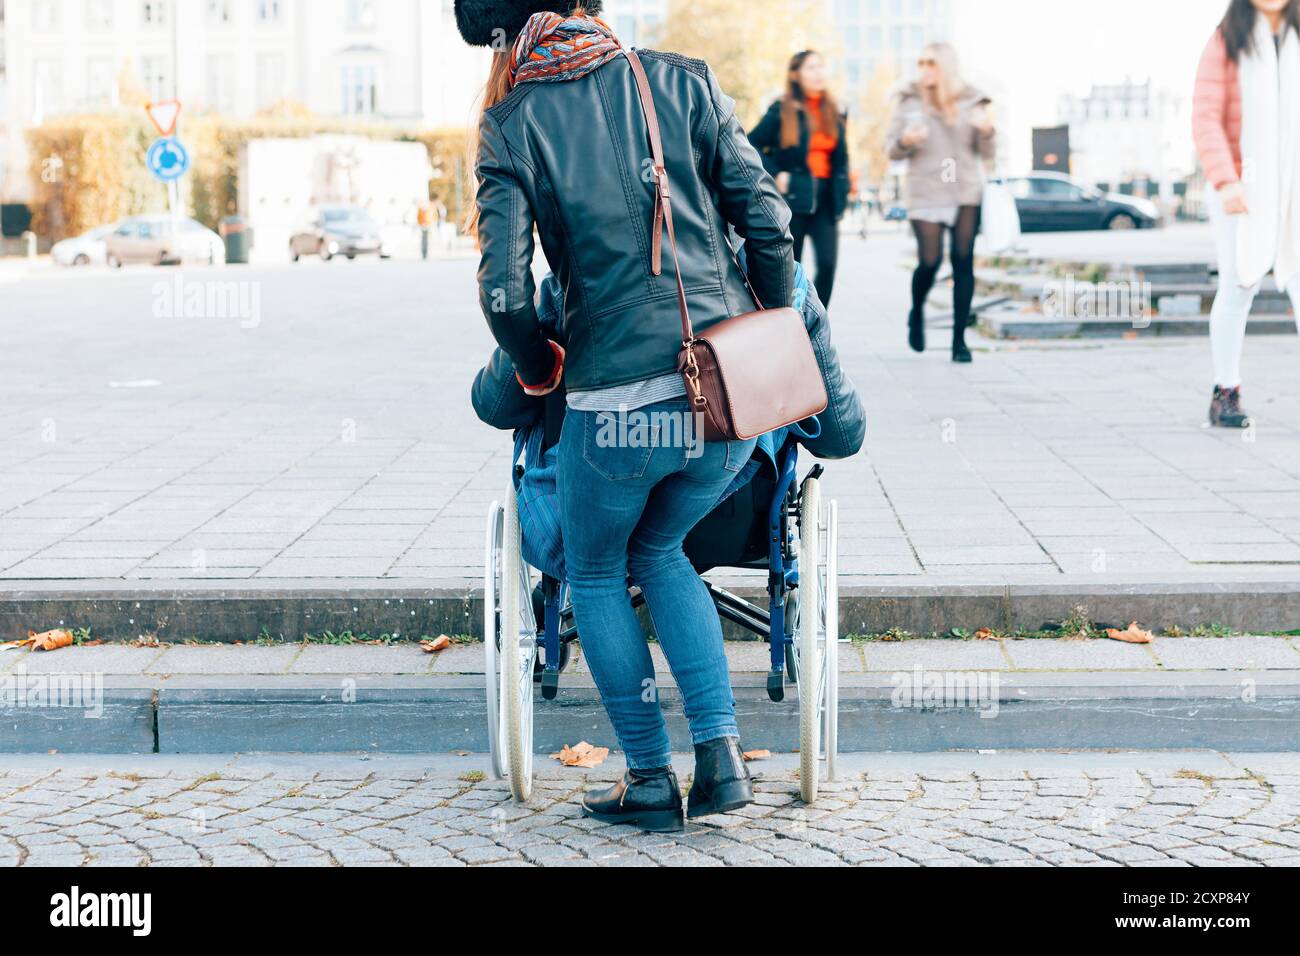 Rückansicht einer Frau, die einer behinderten Person hilft Gehen Sie die Stufen mit dem Rollstuhl hinunter - architektonische Grenzen Im Städtekonzept Stockfoto